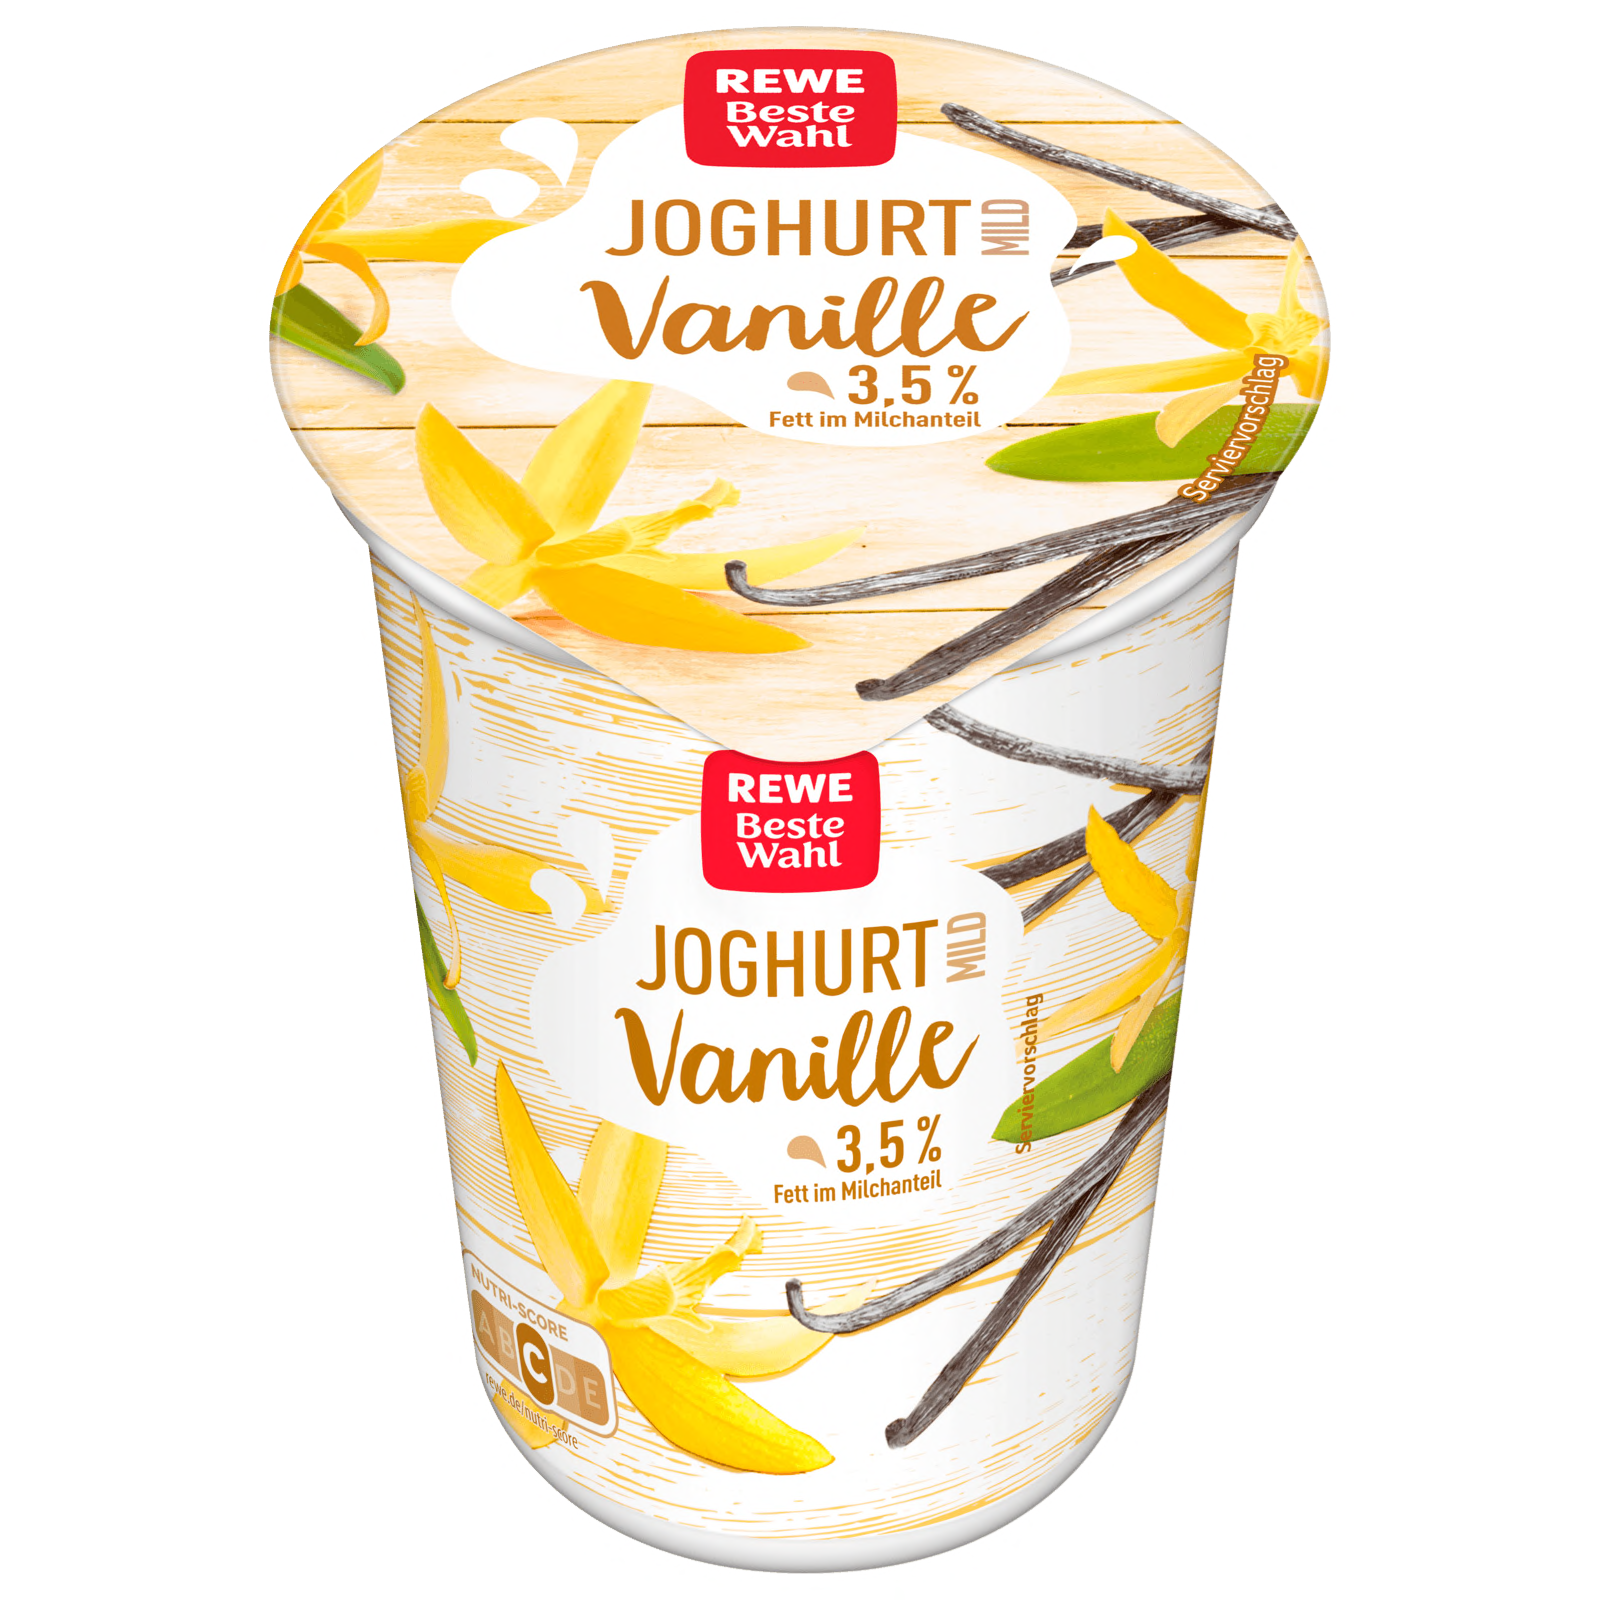 REWE Beste Wahl Joghurt mild Vanille 250g  für 0.99 EUR